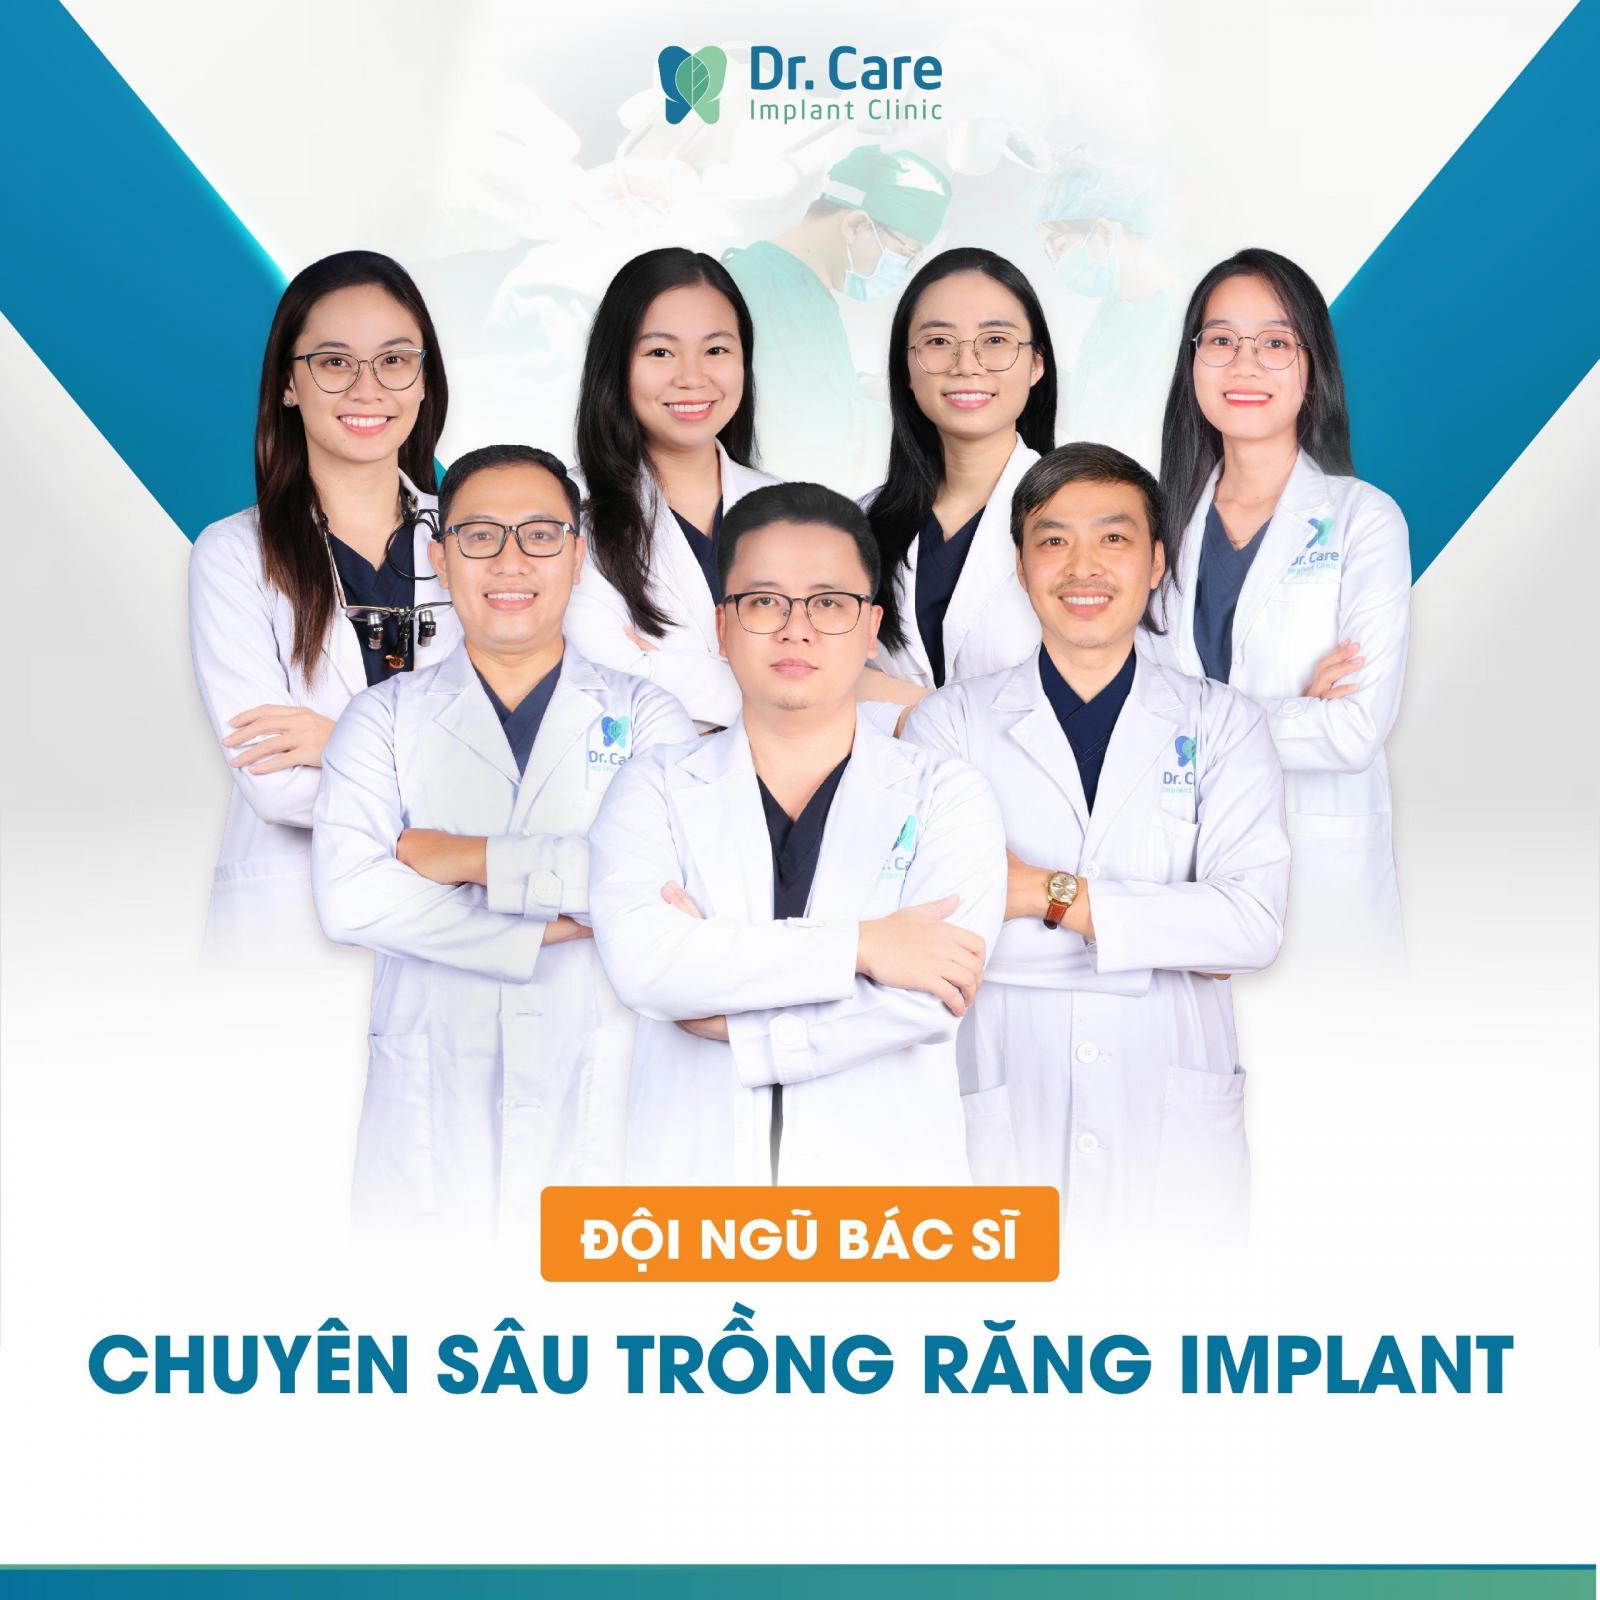 Dr. Care - Địa chỉ trồng răng Implant uy tín, an toàn